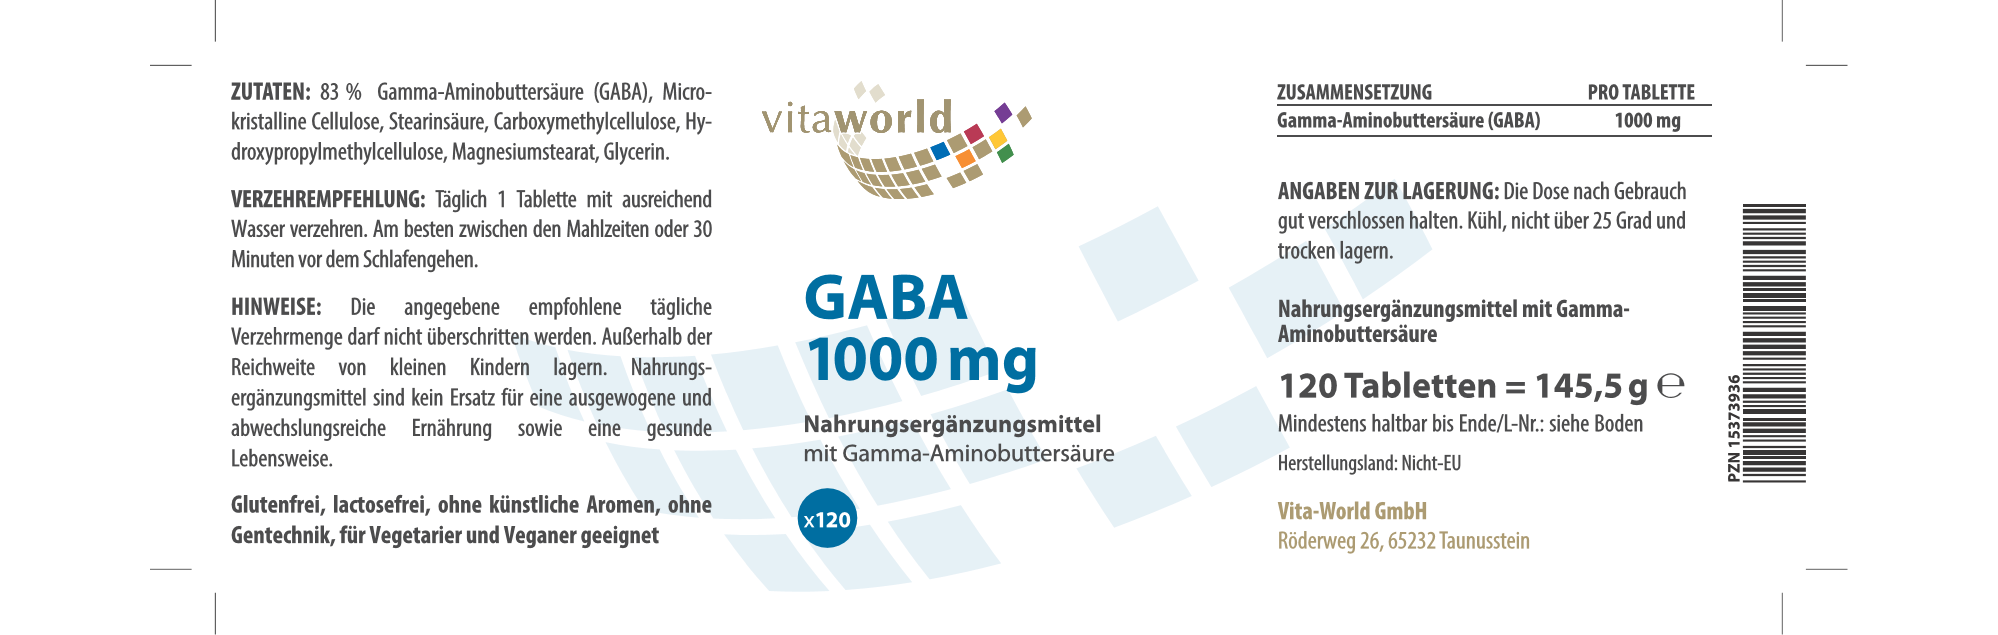 Gaba 1000 mg (120 Tbl)